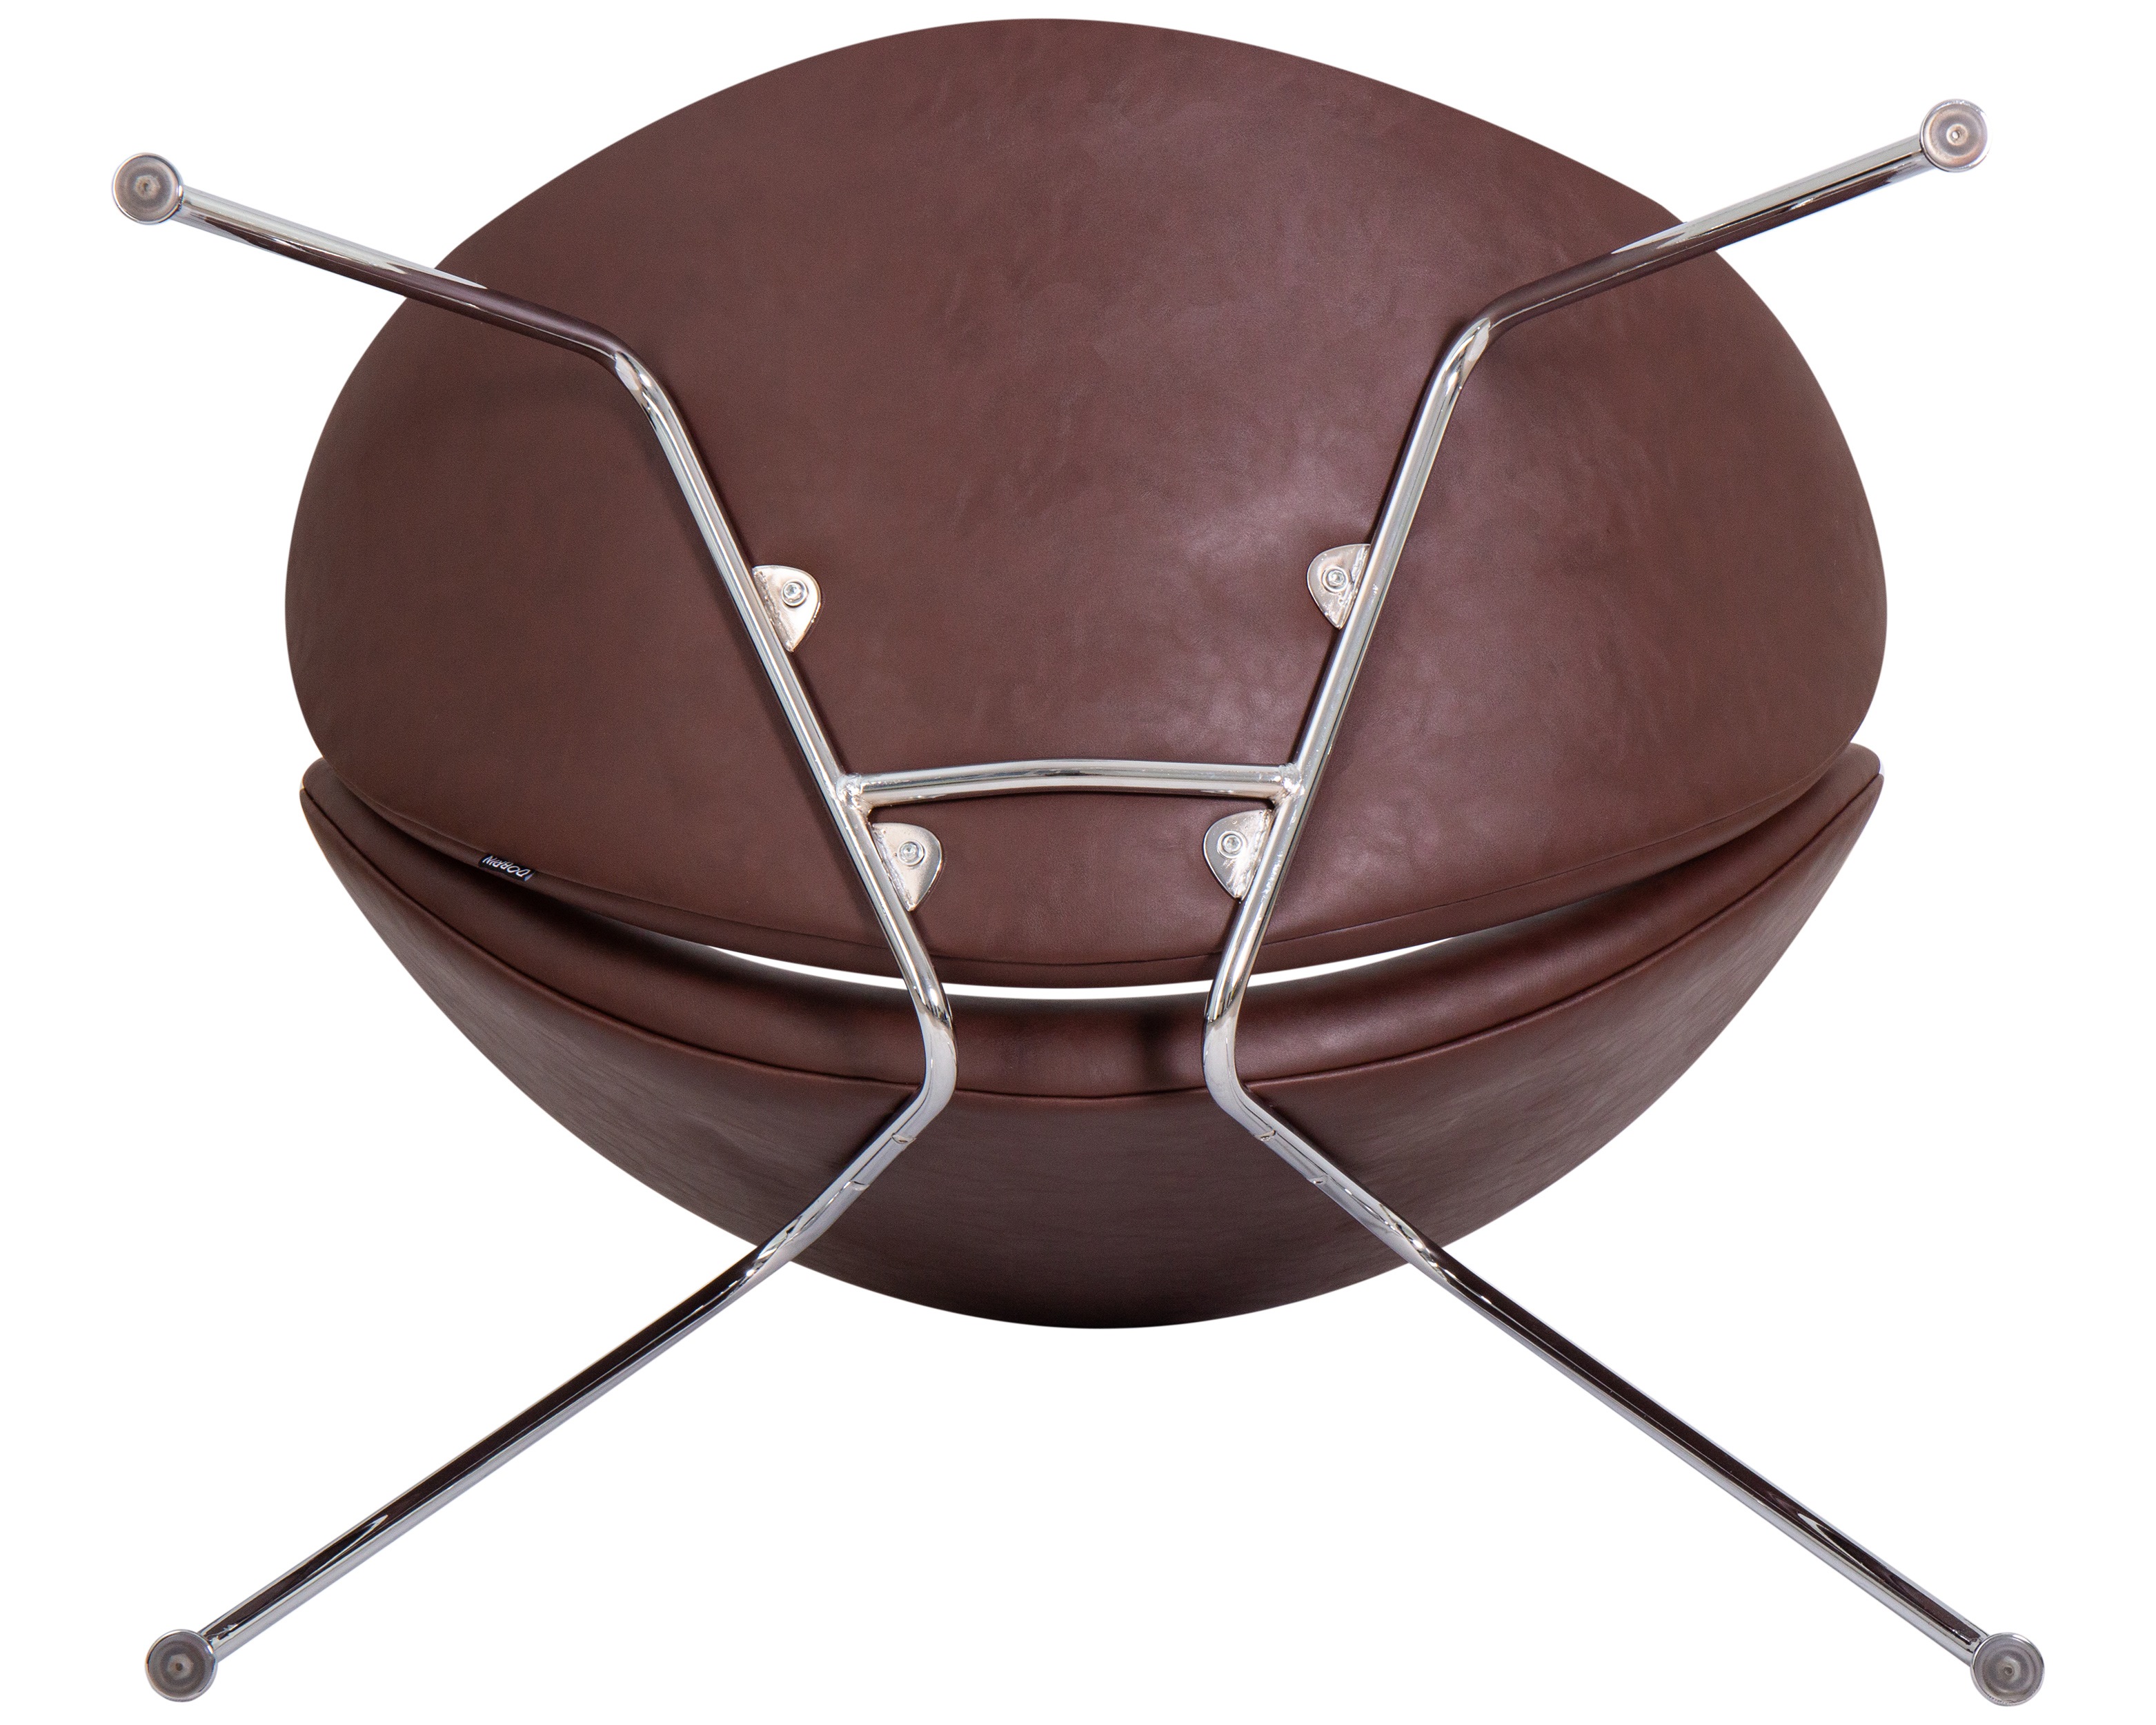 Кресло дизайнерское DOBRIN EMILY (коричневый винил YP5, хромированная сталь)